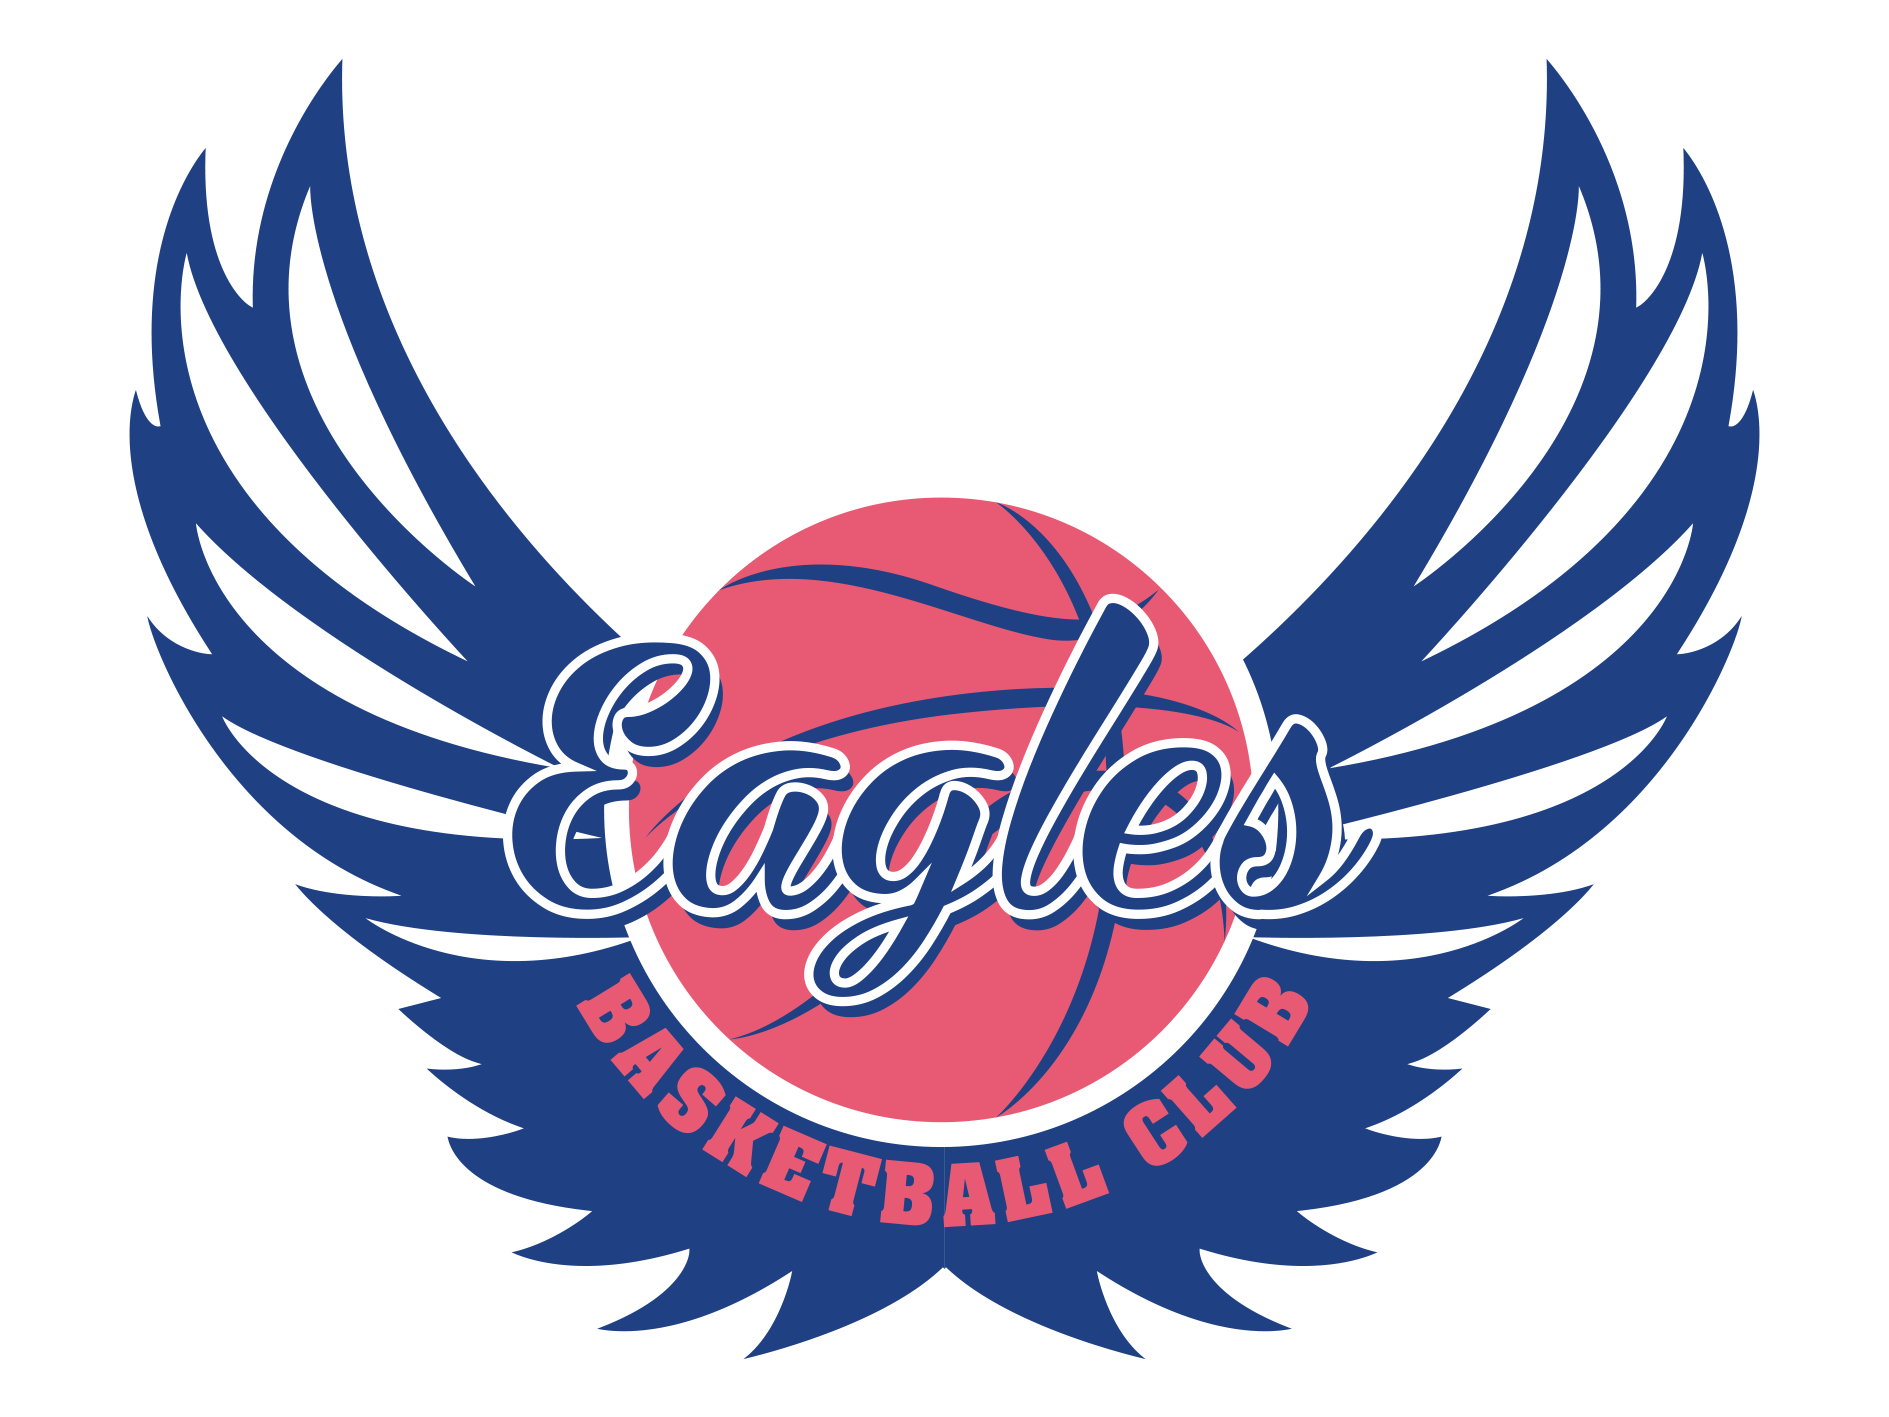 Westcliff Eagles Basketball Club